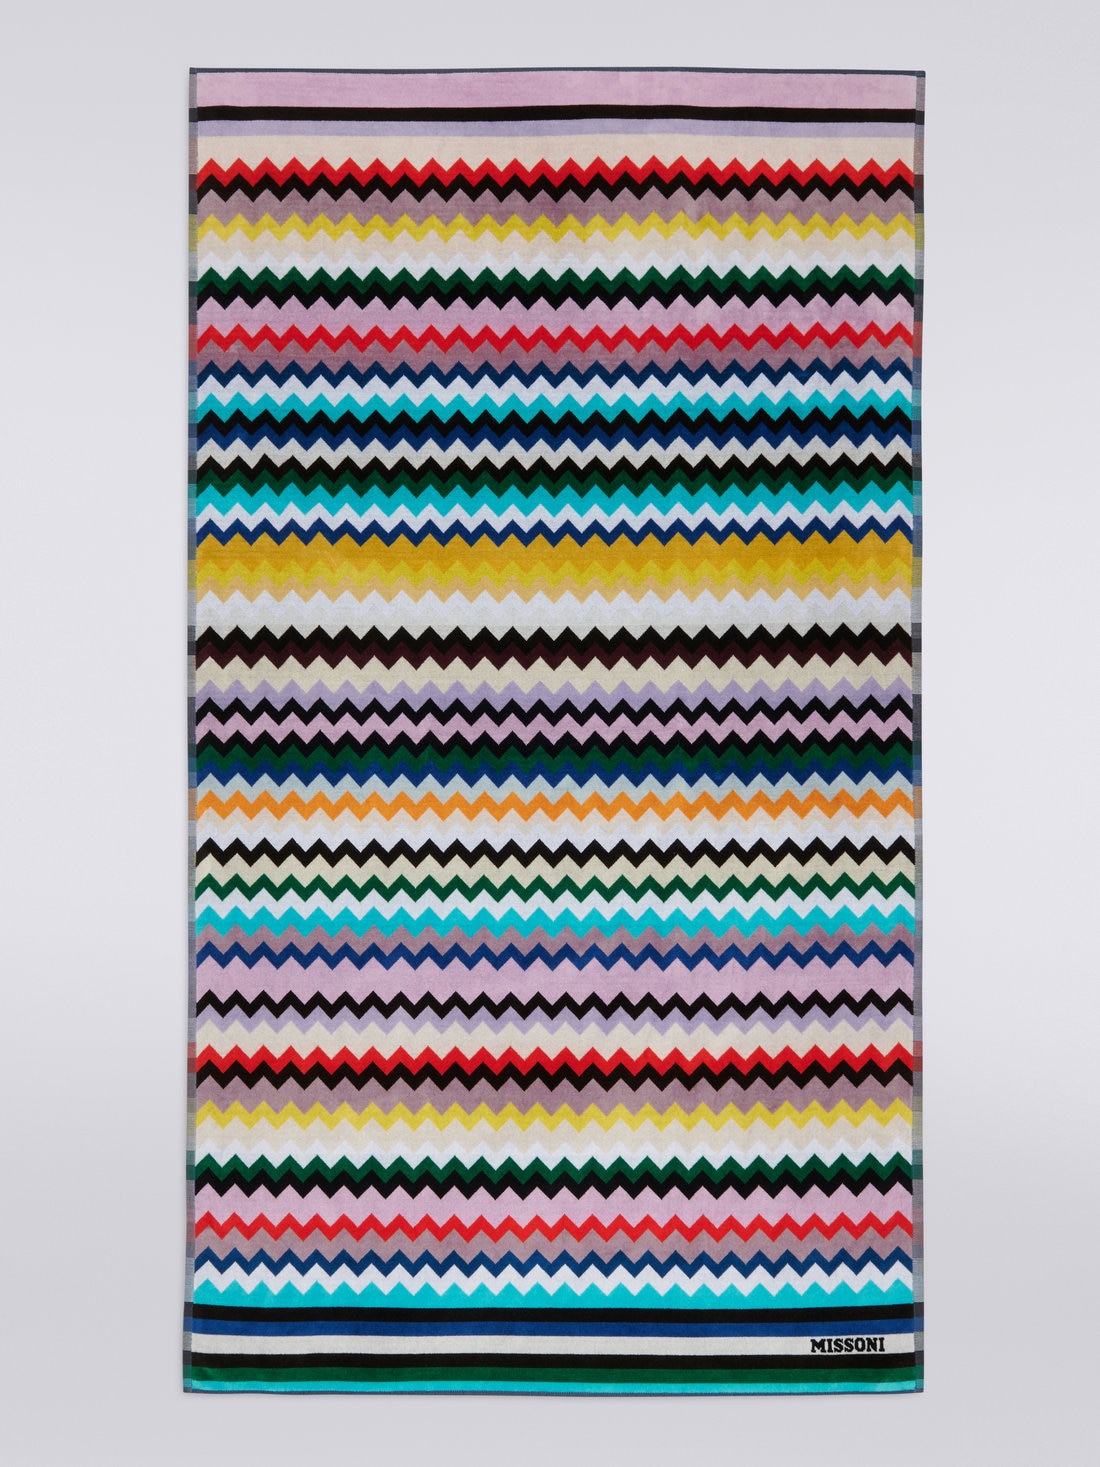 Toalla de playa Carlie 100×180 cm de rizo de algodón con motivo de espigas, Multicolor  - 8051575843389 - 1